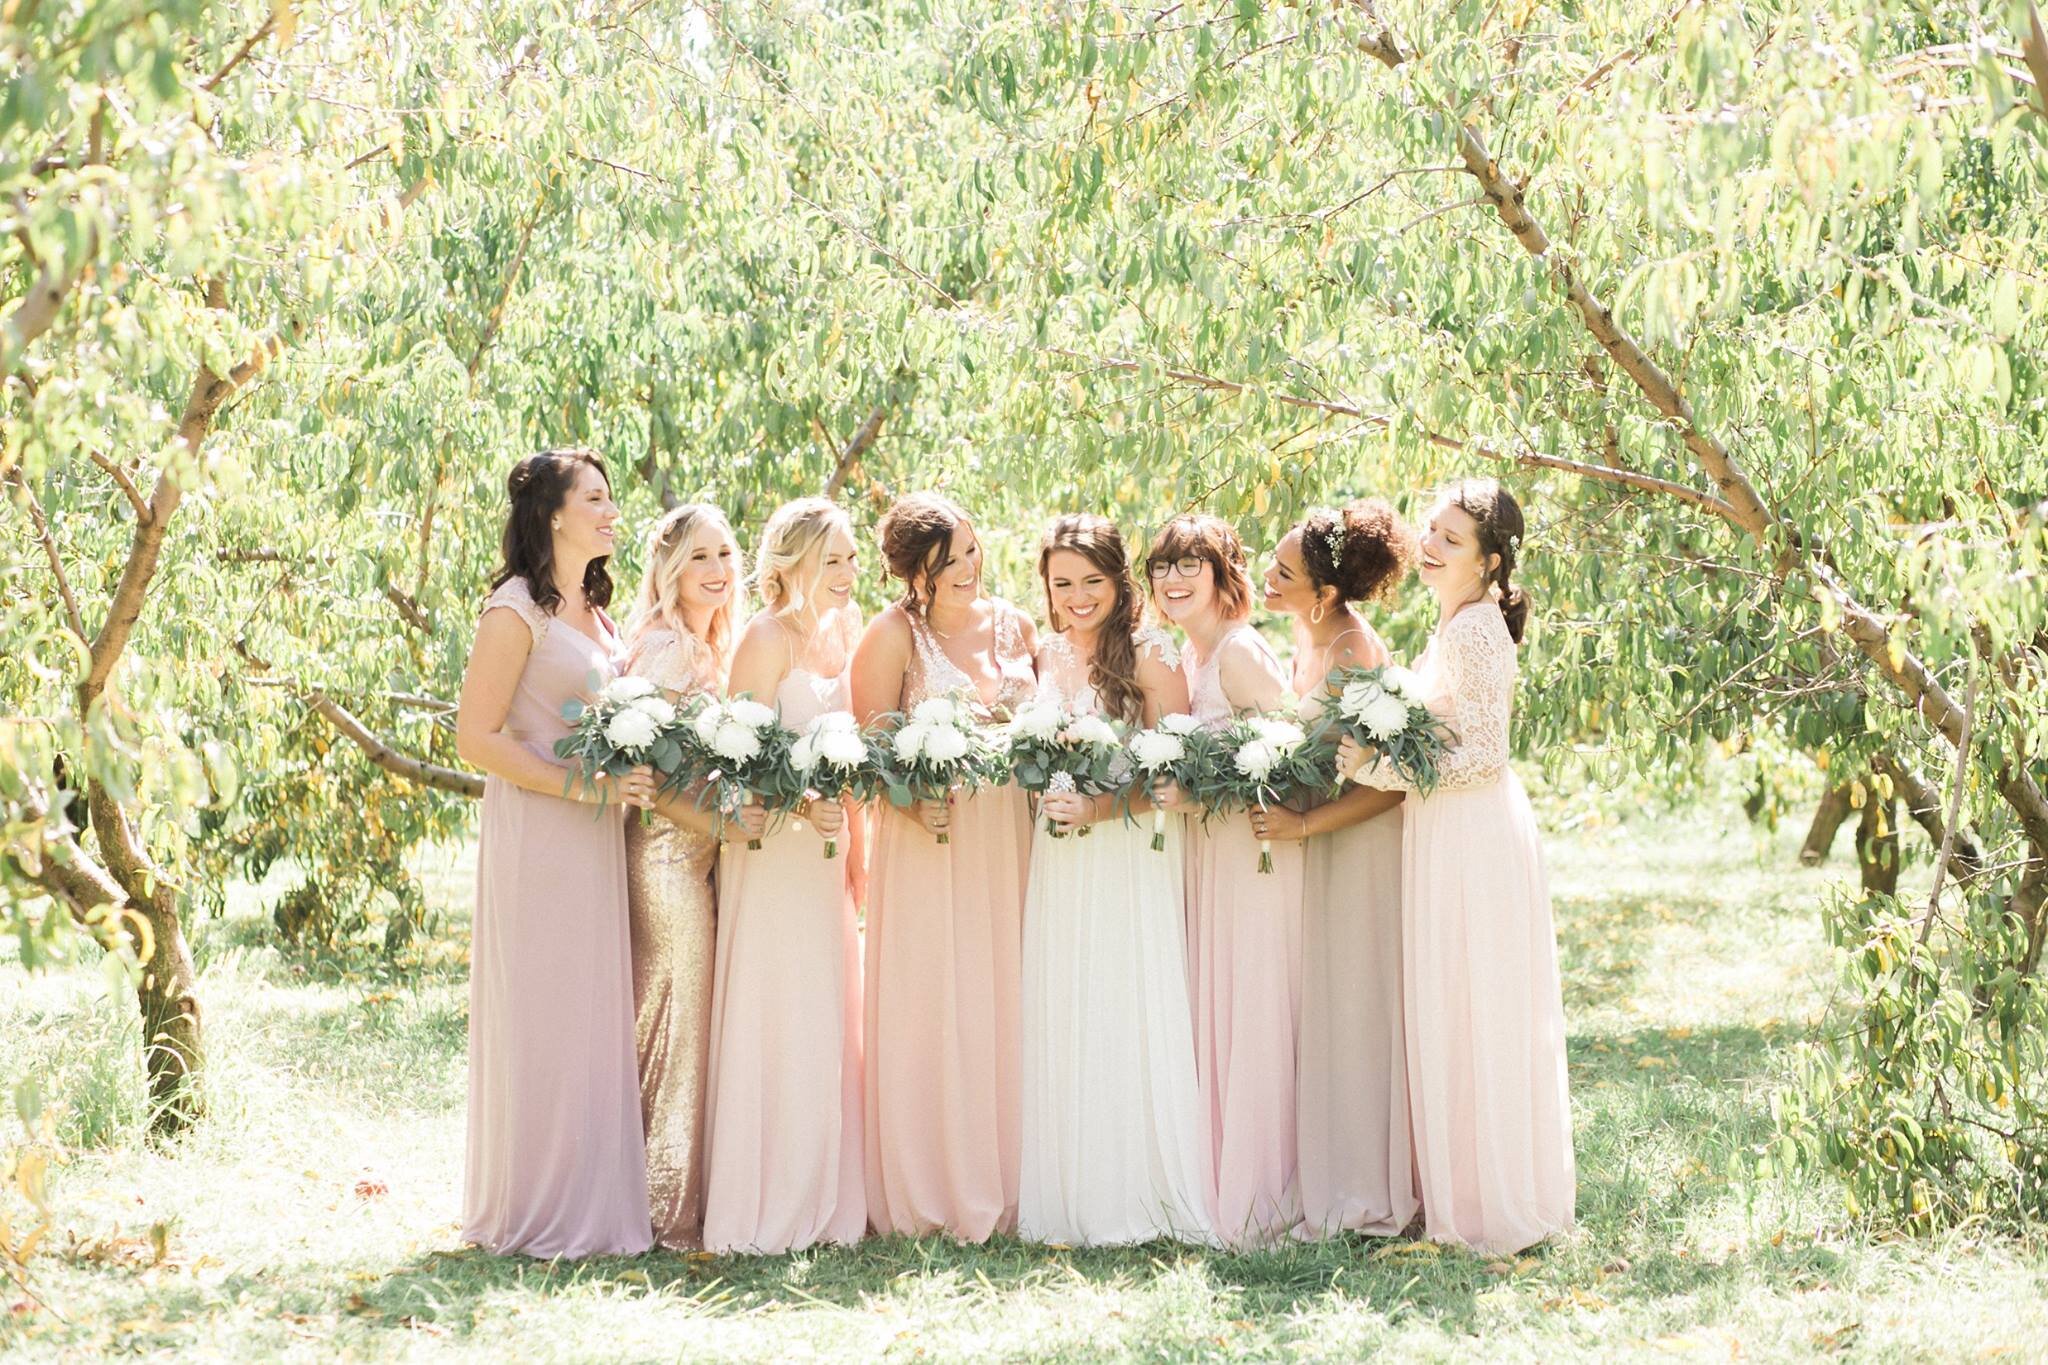 Alison Carrol wedding bridesmaids.jpg